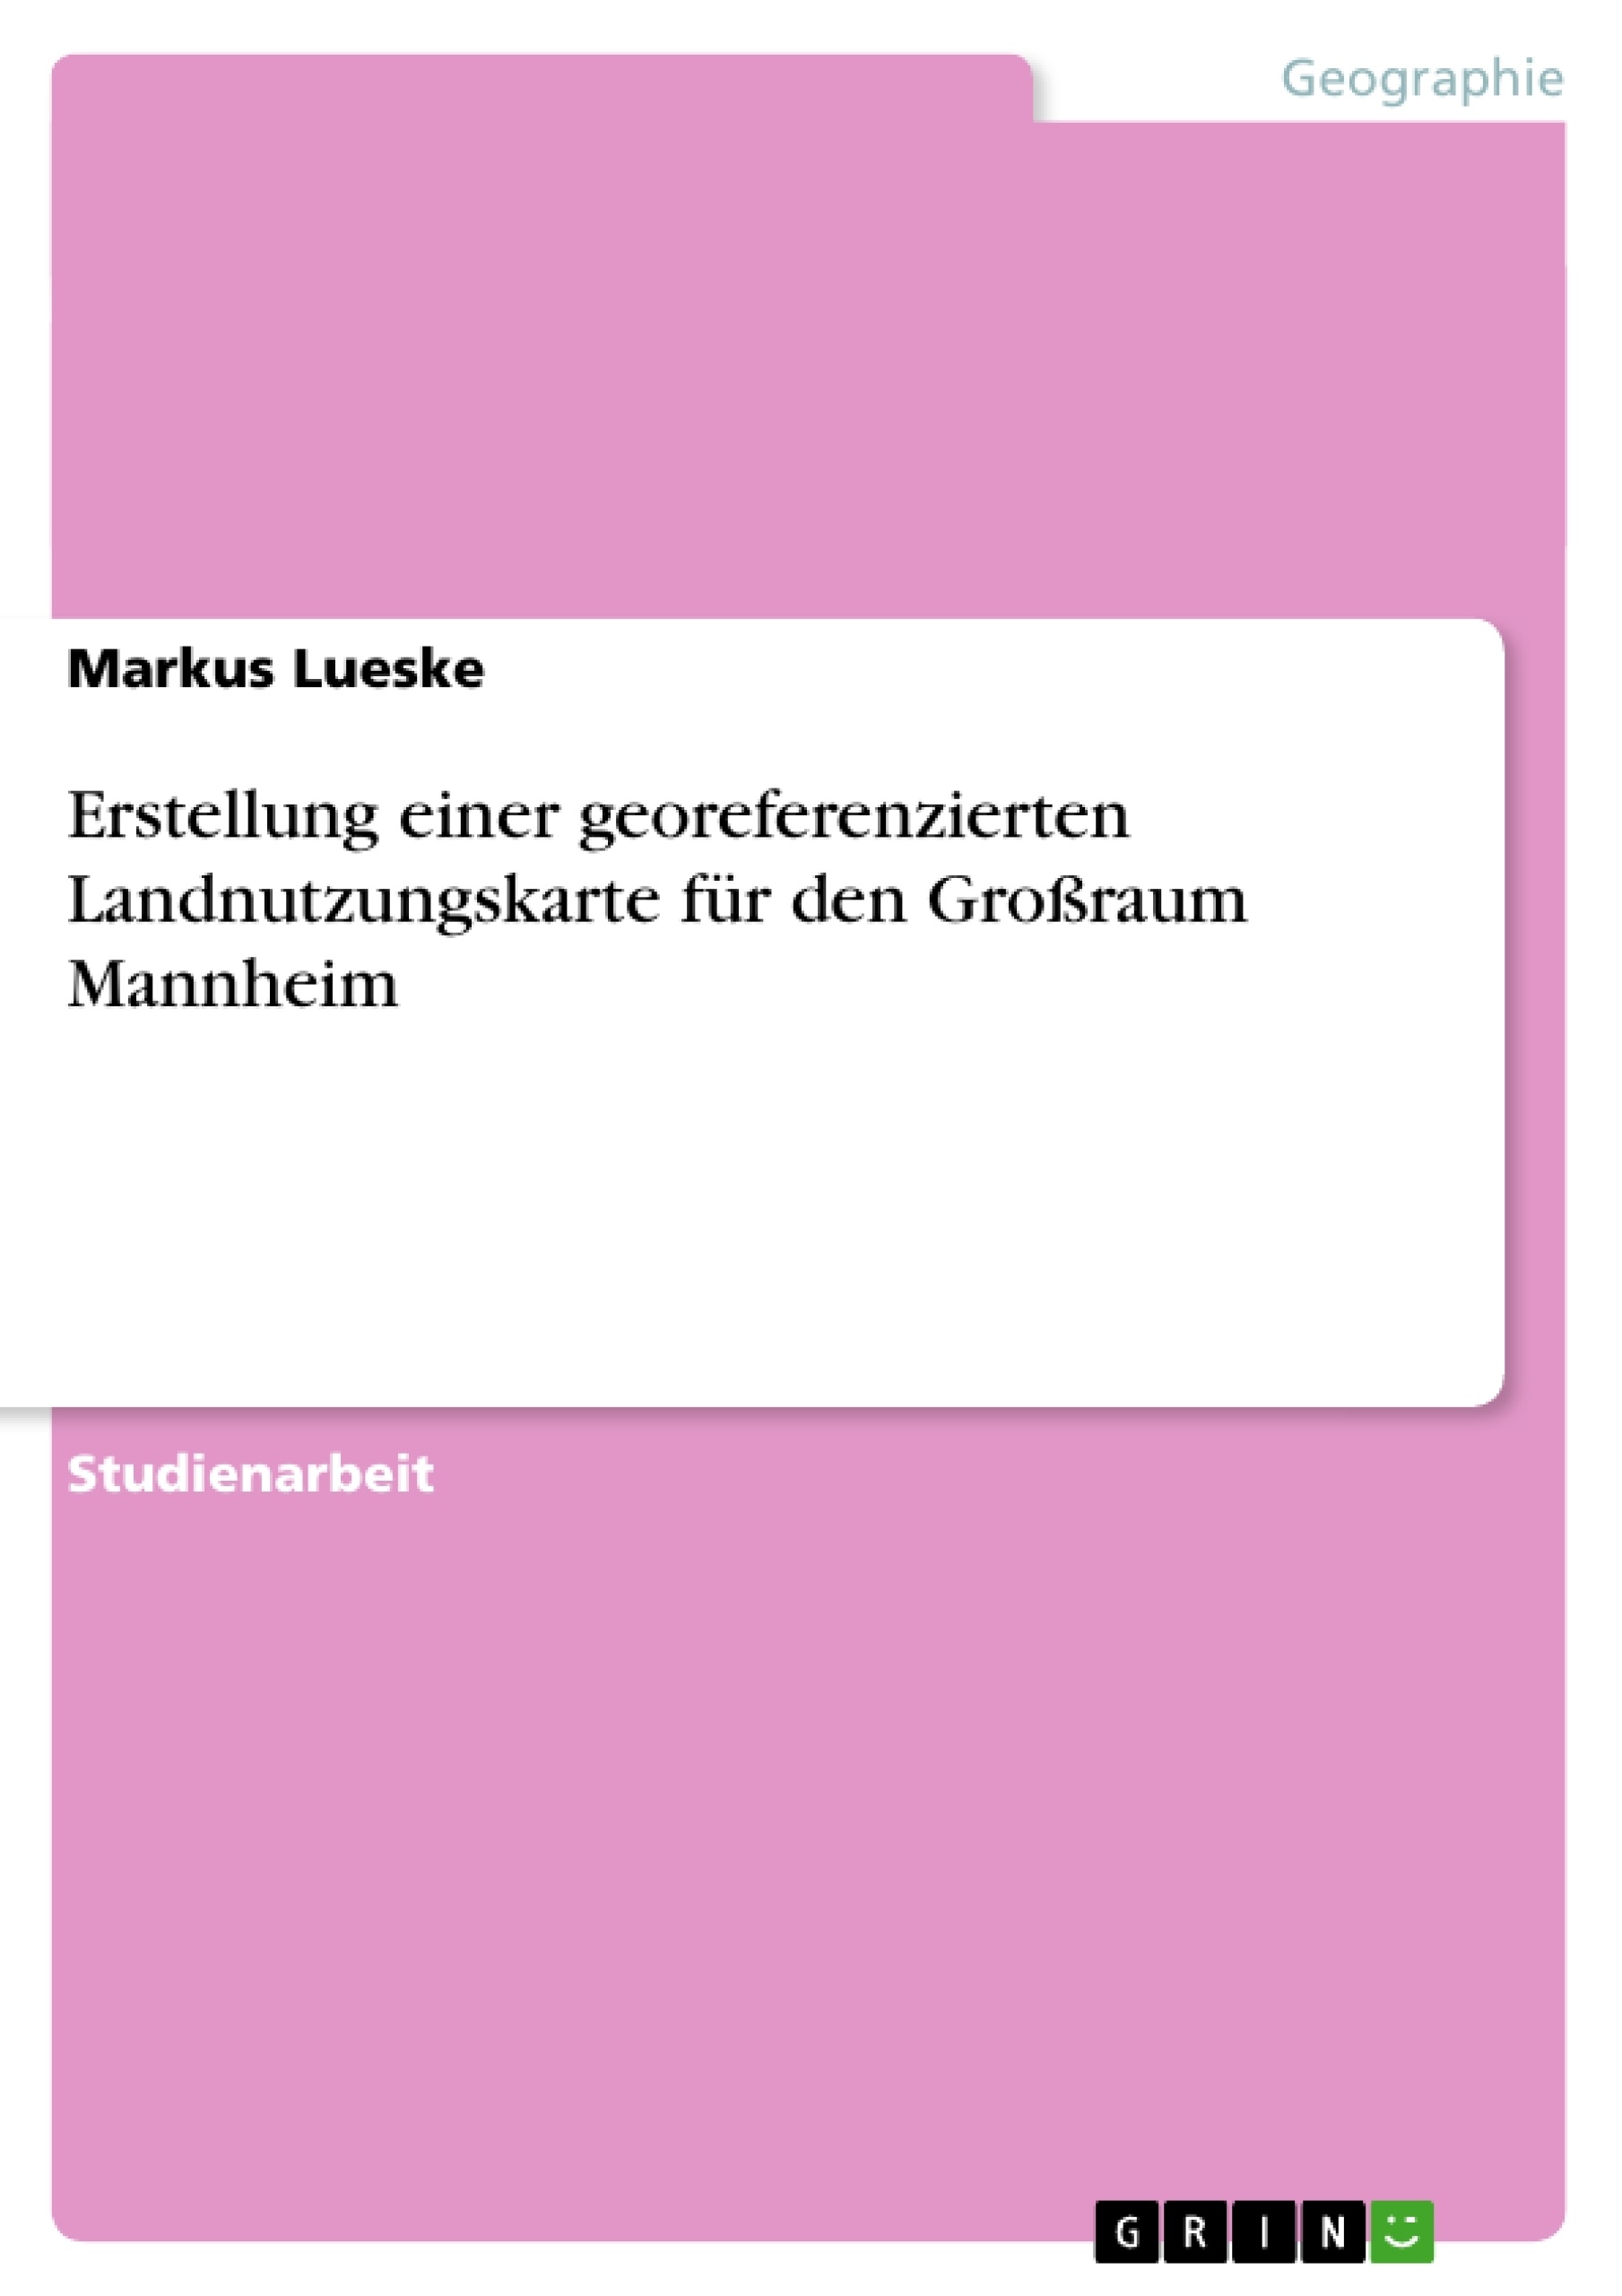 Titre: Erstellung einer georeferenzierten Landnutzungskarte für den Großraum Mannheim